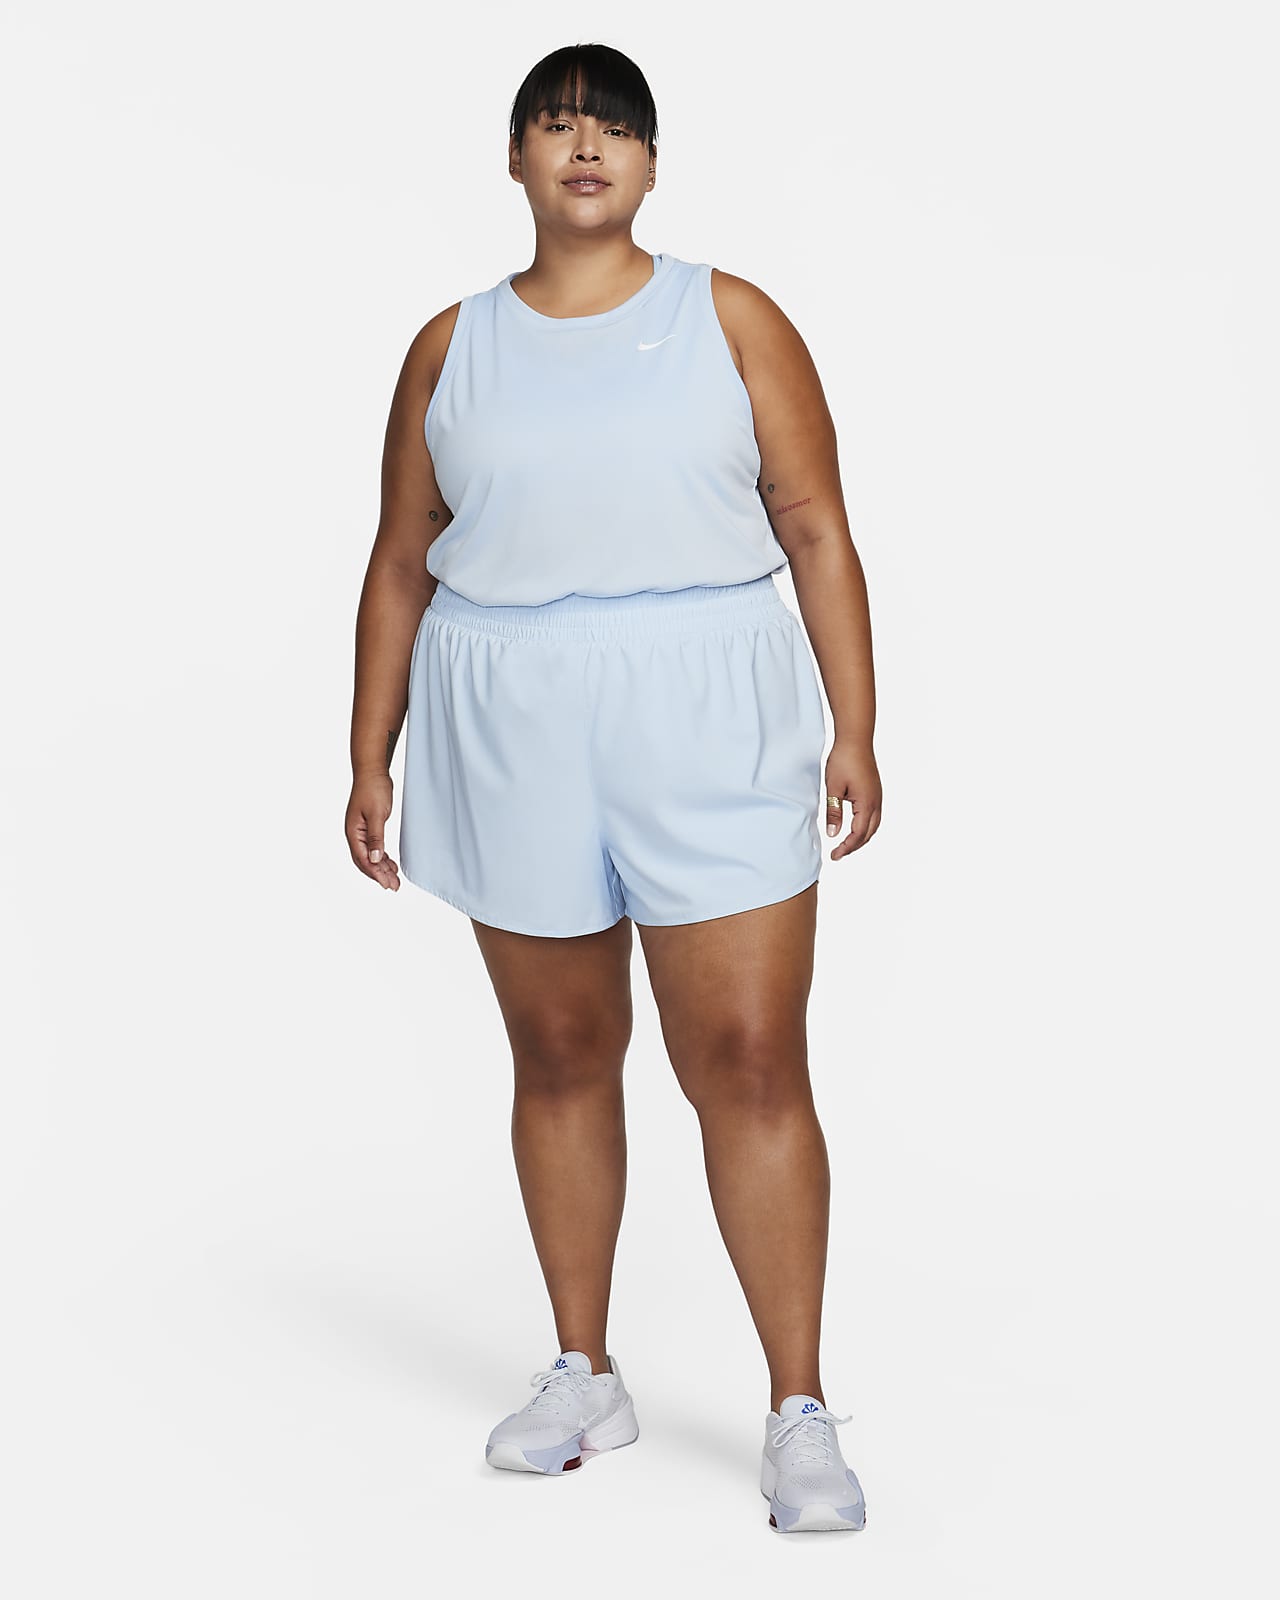 Nike Dri-FIT Women's Tank (Plus Size).